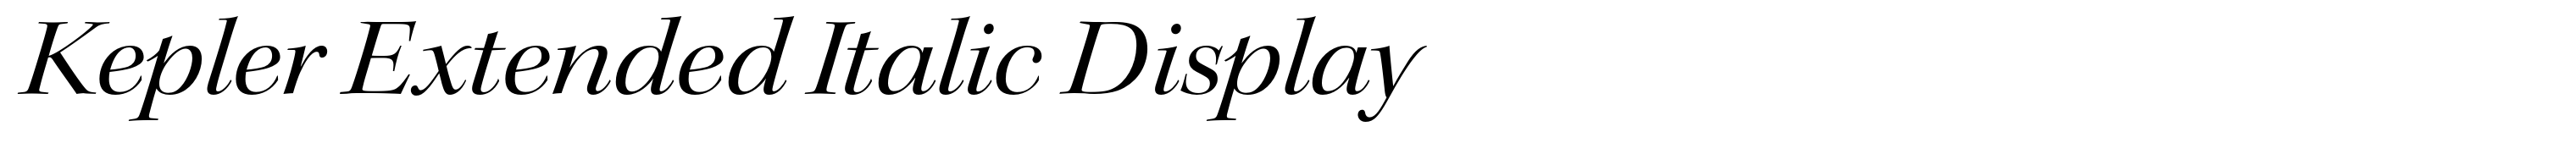 Kepler Extended Italic Display